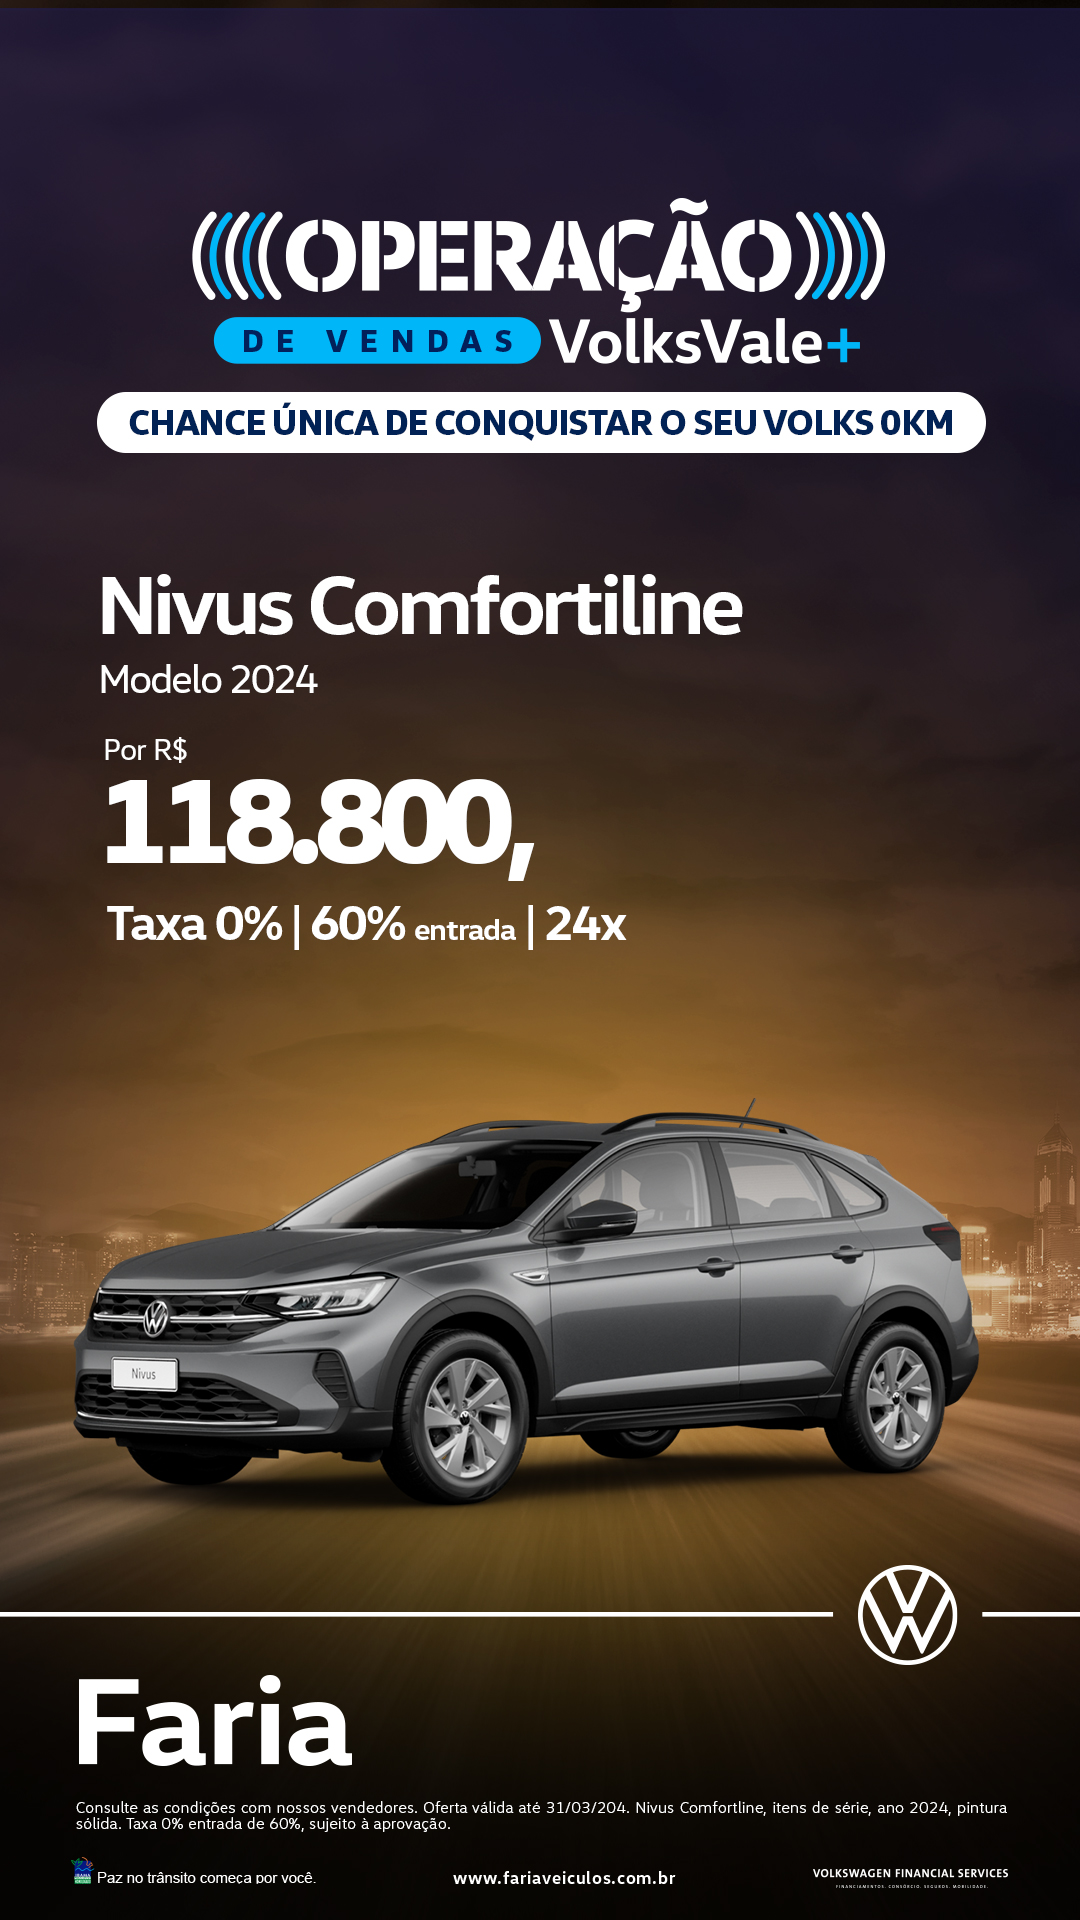 Nivus Comfortline